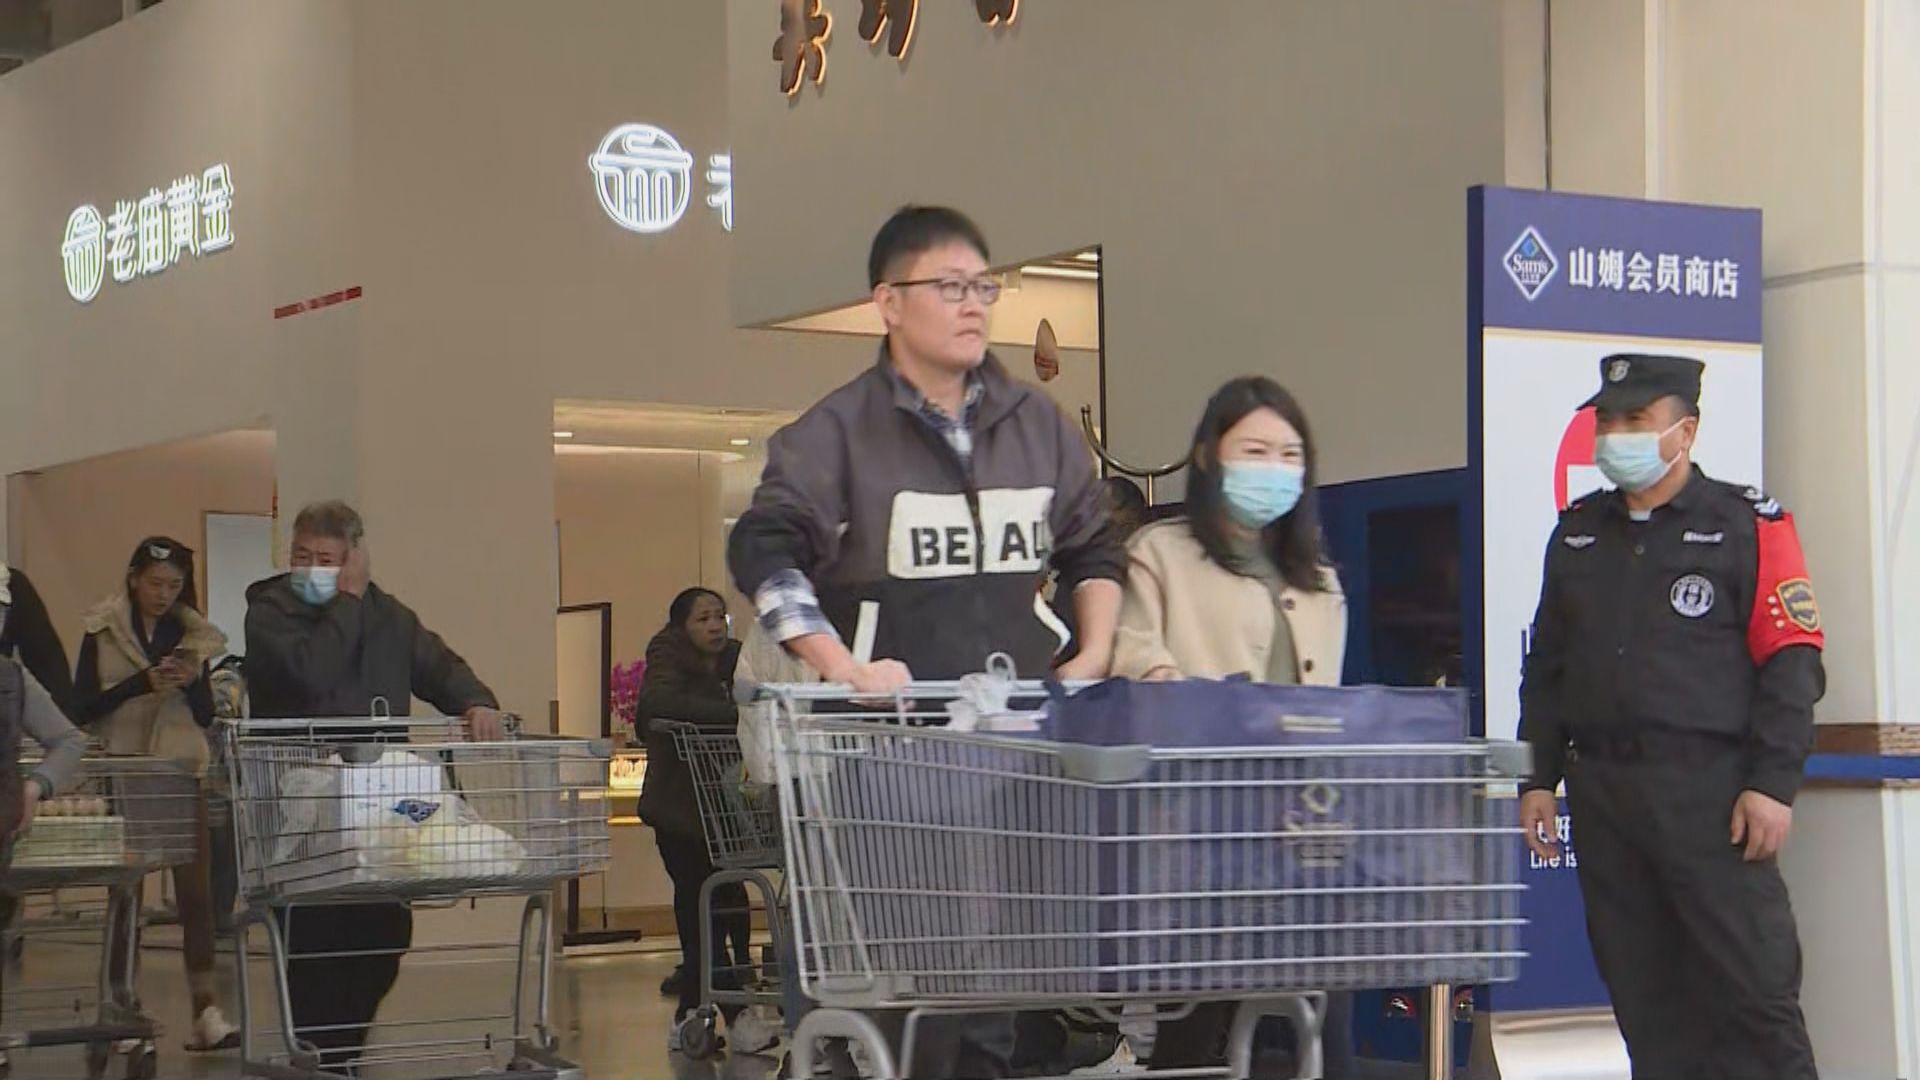 港人乘坐新開直通過境巴士線 深圳超市掃貨